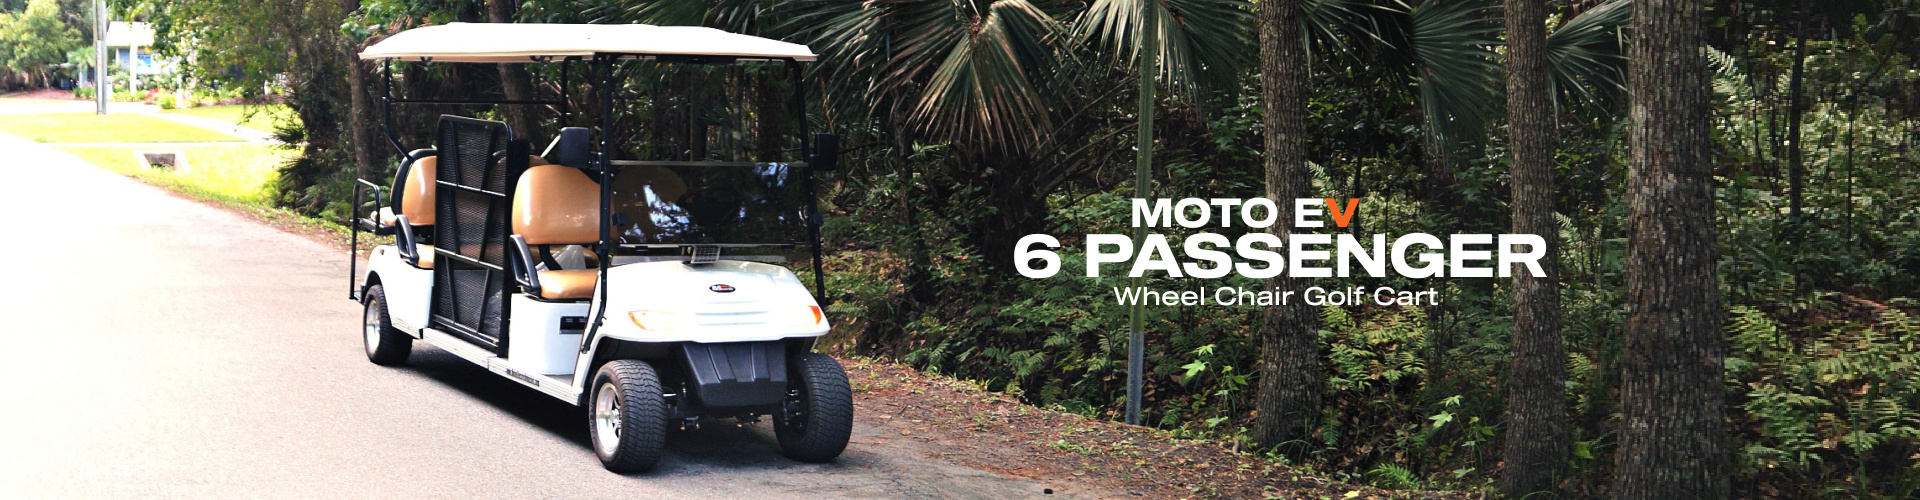 MotoEV 6 Passenger Wheel Chair Golf Cart